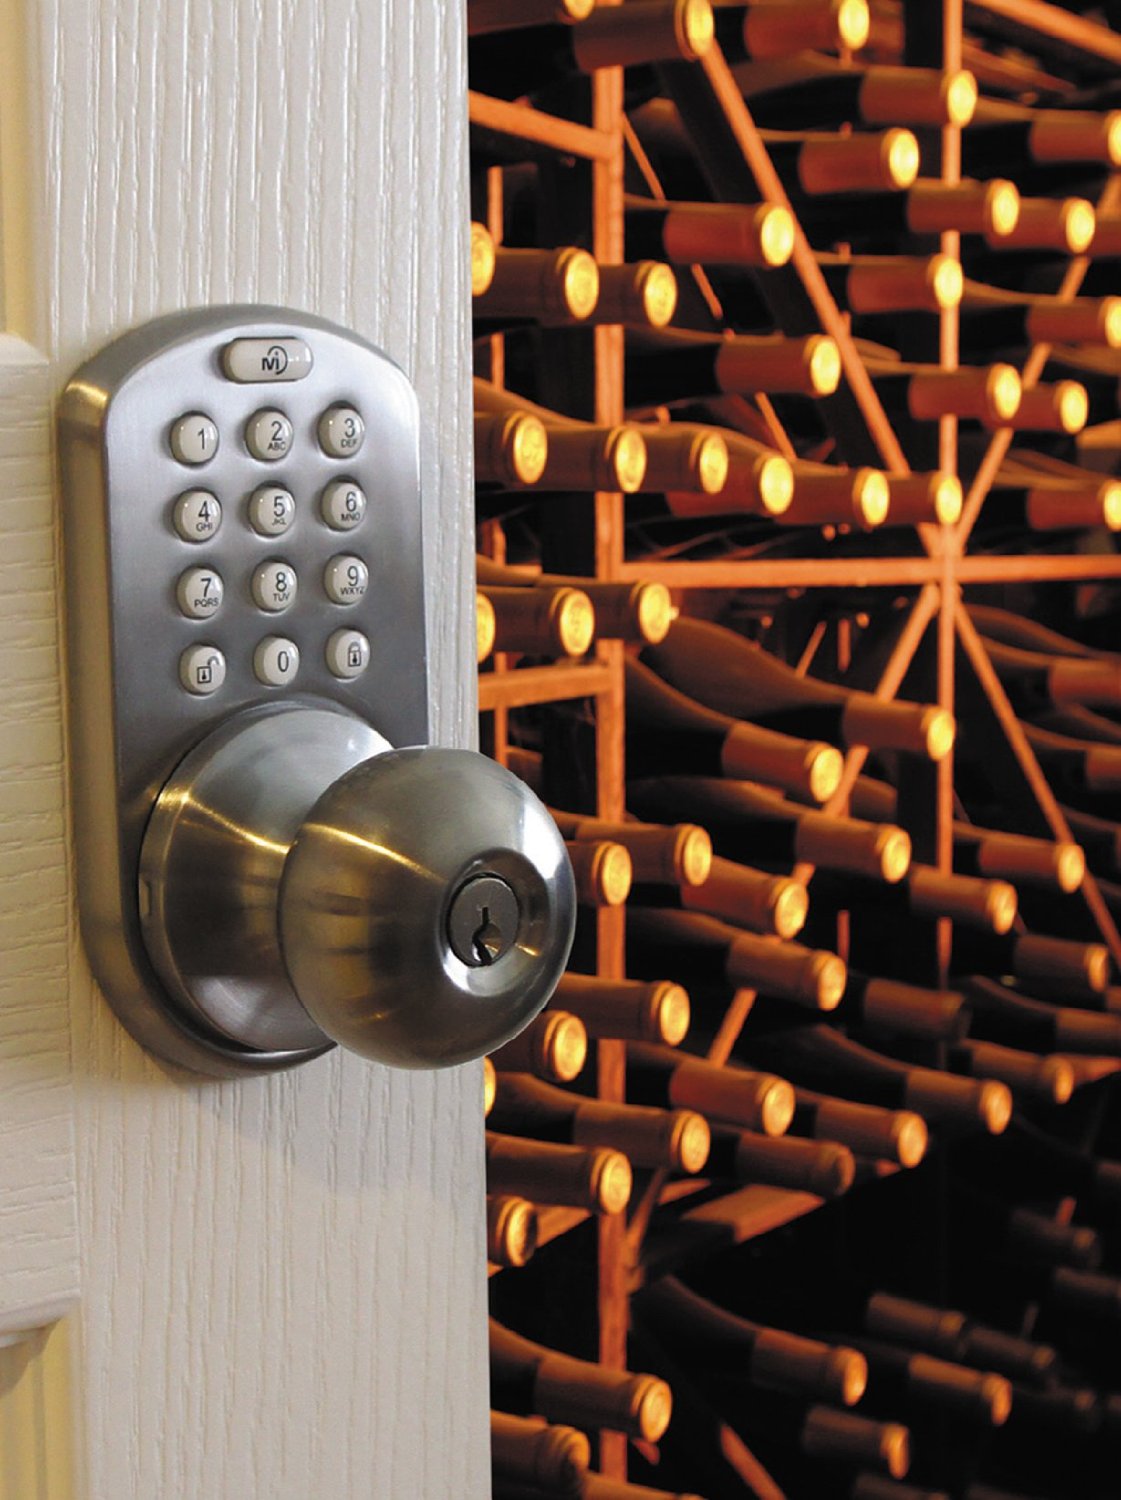 milocks indoor electronic touchpad keyless entry door lock